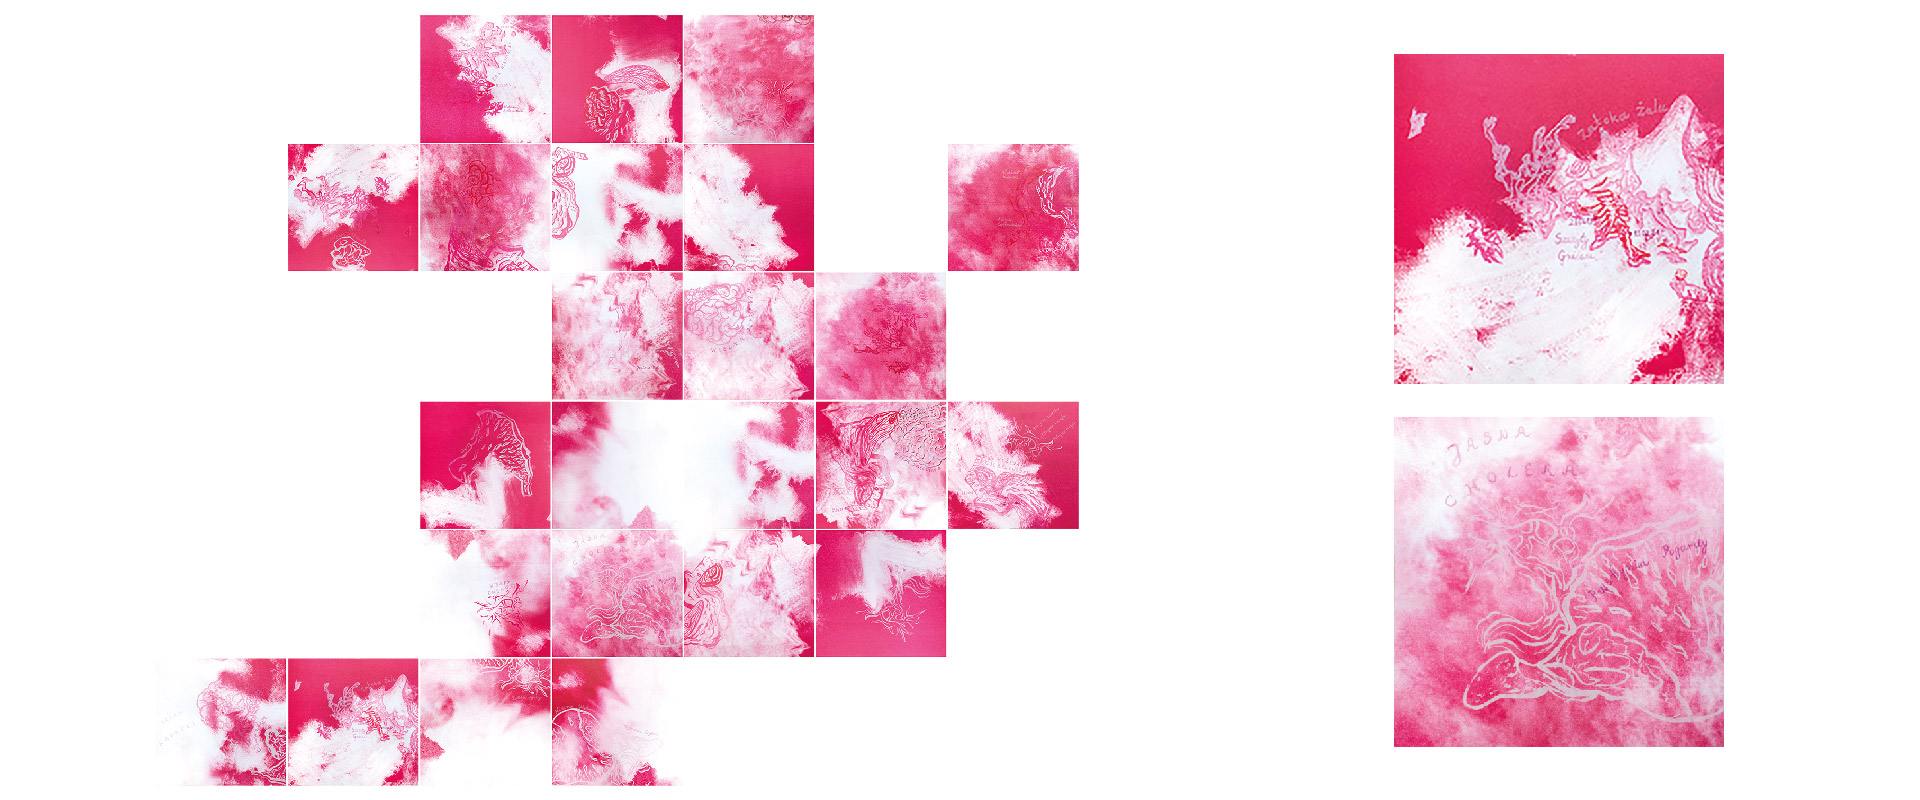 Obraz przedstawia układ kwadratów  z nadrukiem fragmentów tkanek w kolorze różowym. Dwa obrazy sąsiednie to powiększone elementy układu z widocznymi odręcznymi napisami.